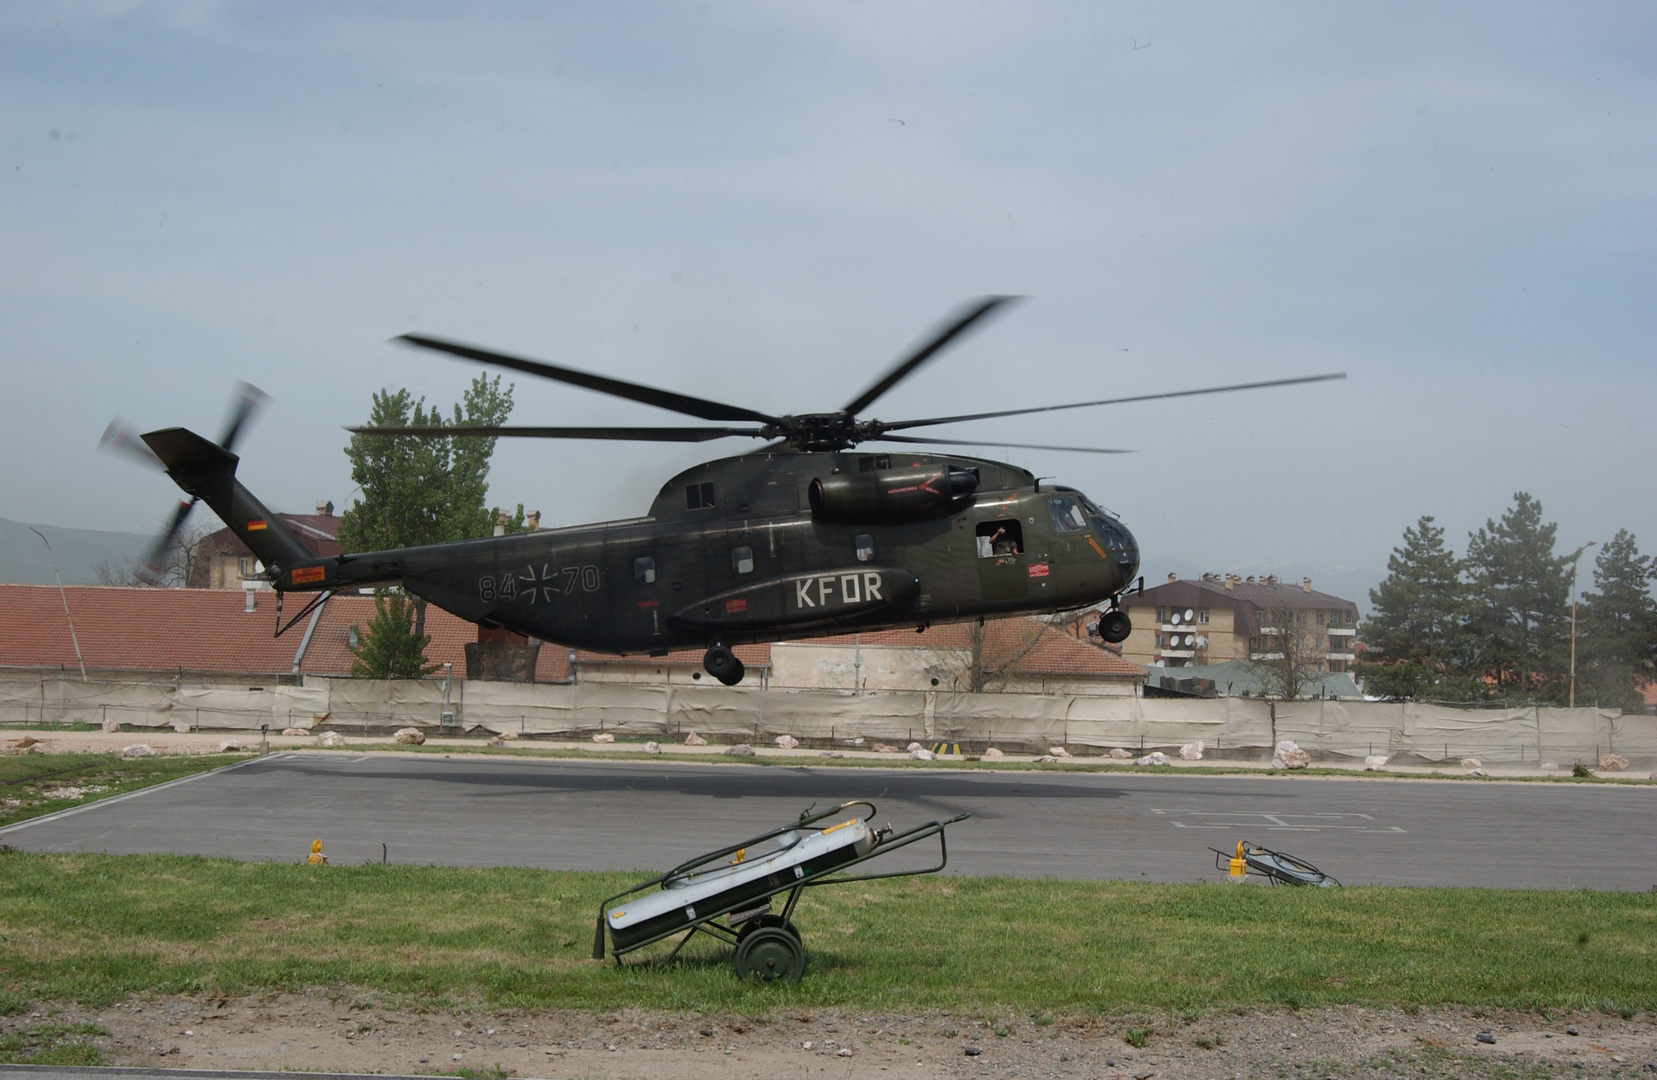 Landene CH-53 in Prizren